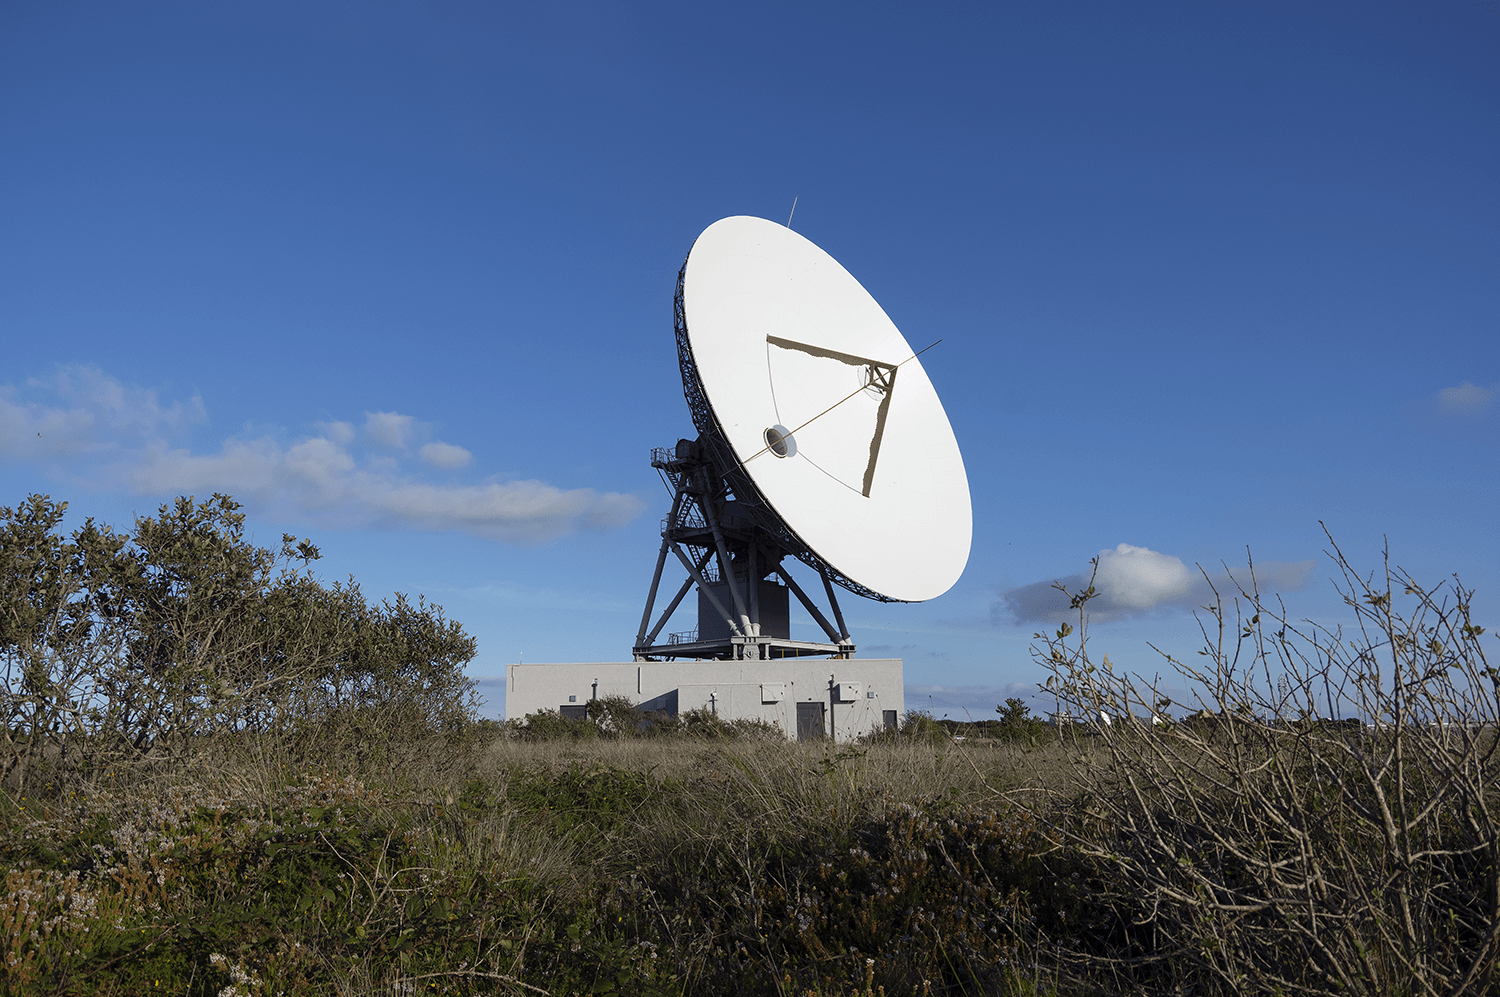 The 32 GHY-6 Deep Space Antenna looks skyward against a bright blue sky